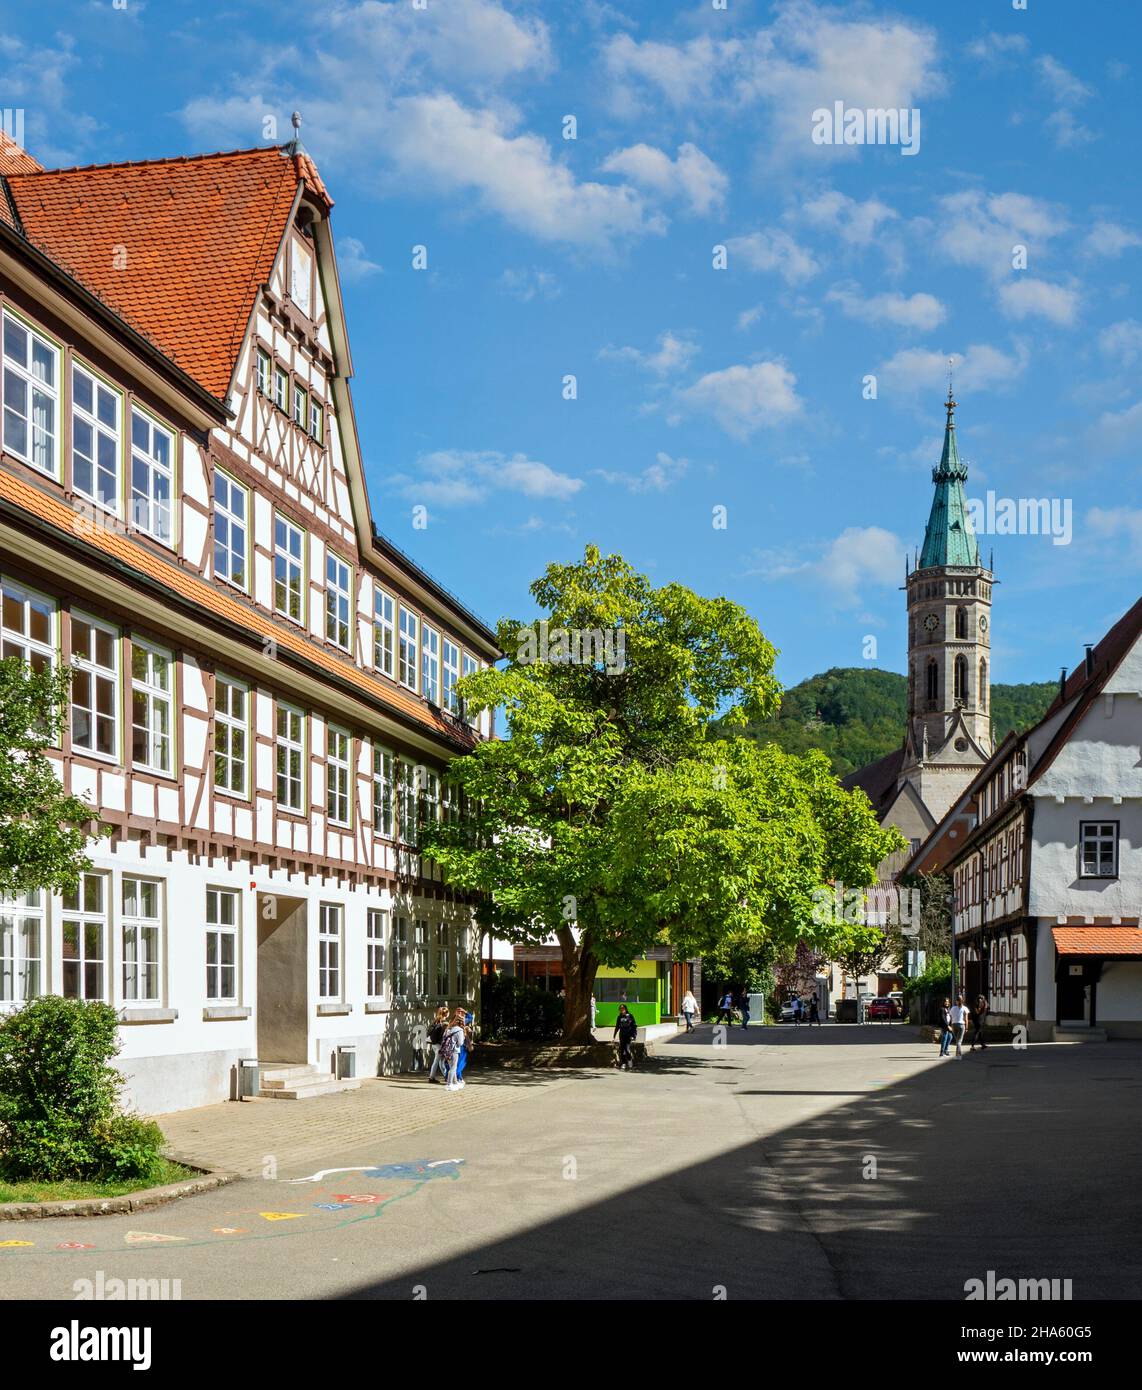 l'ospedale è stato fondato nel 1480 dal conte eberhard v. im bart. esisteva in parte fino al 1948. oggi, la scuola di comunità barbara gonzaga si trova nel distretto ospedaliero, bad urach, baden-württemberg, germania Foto Stock